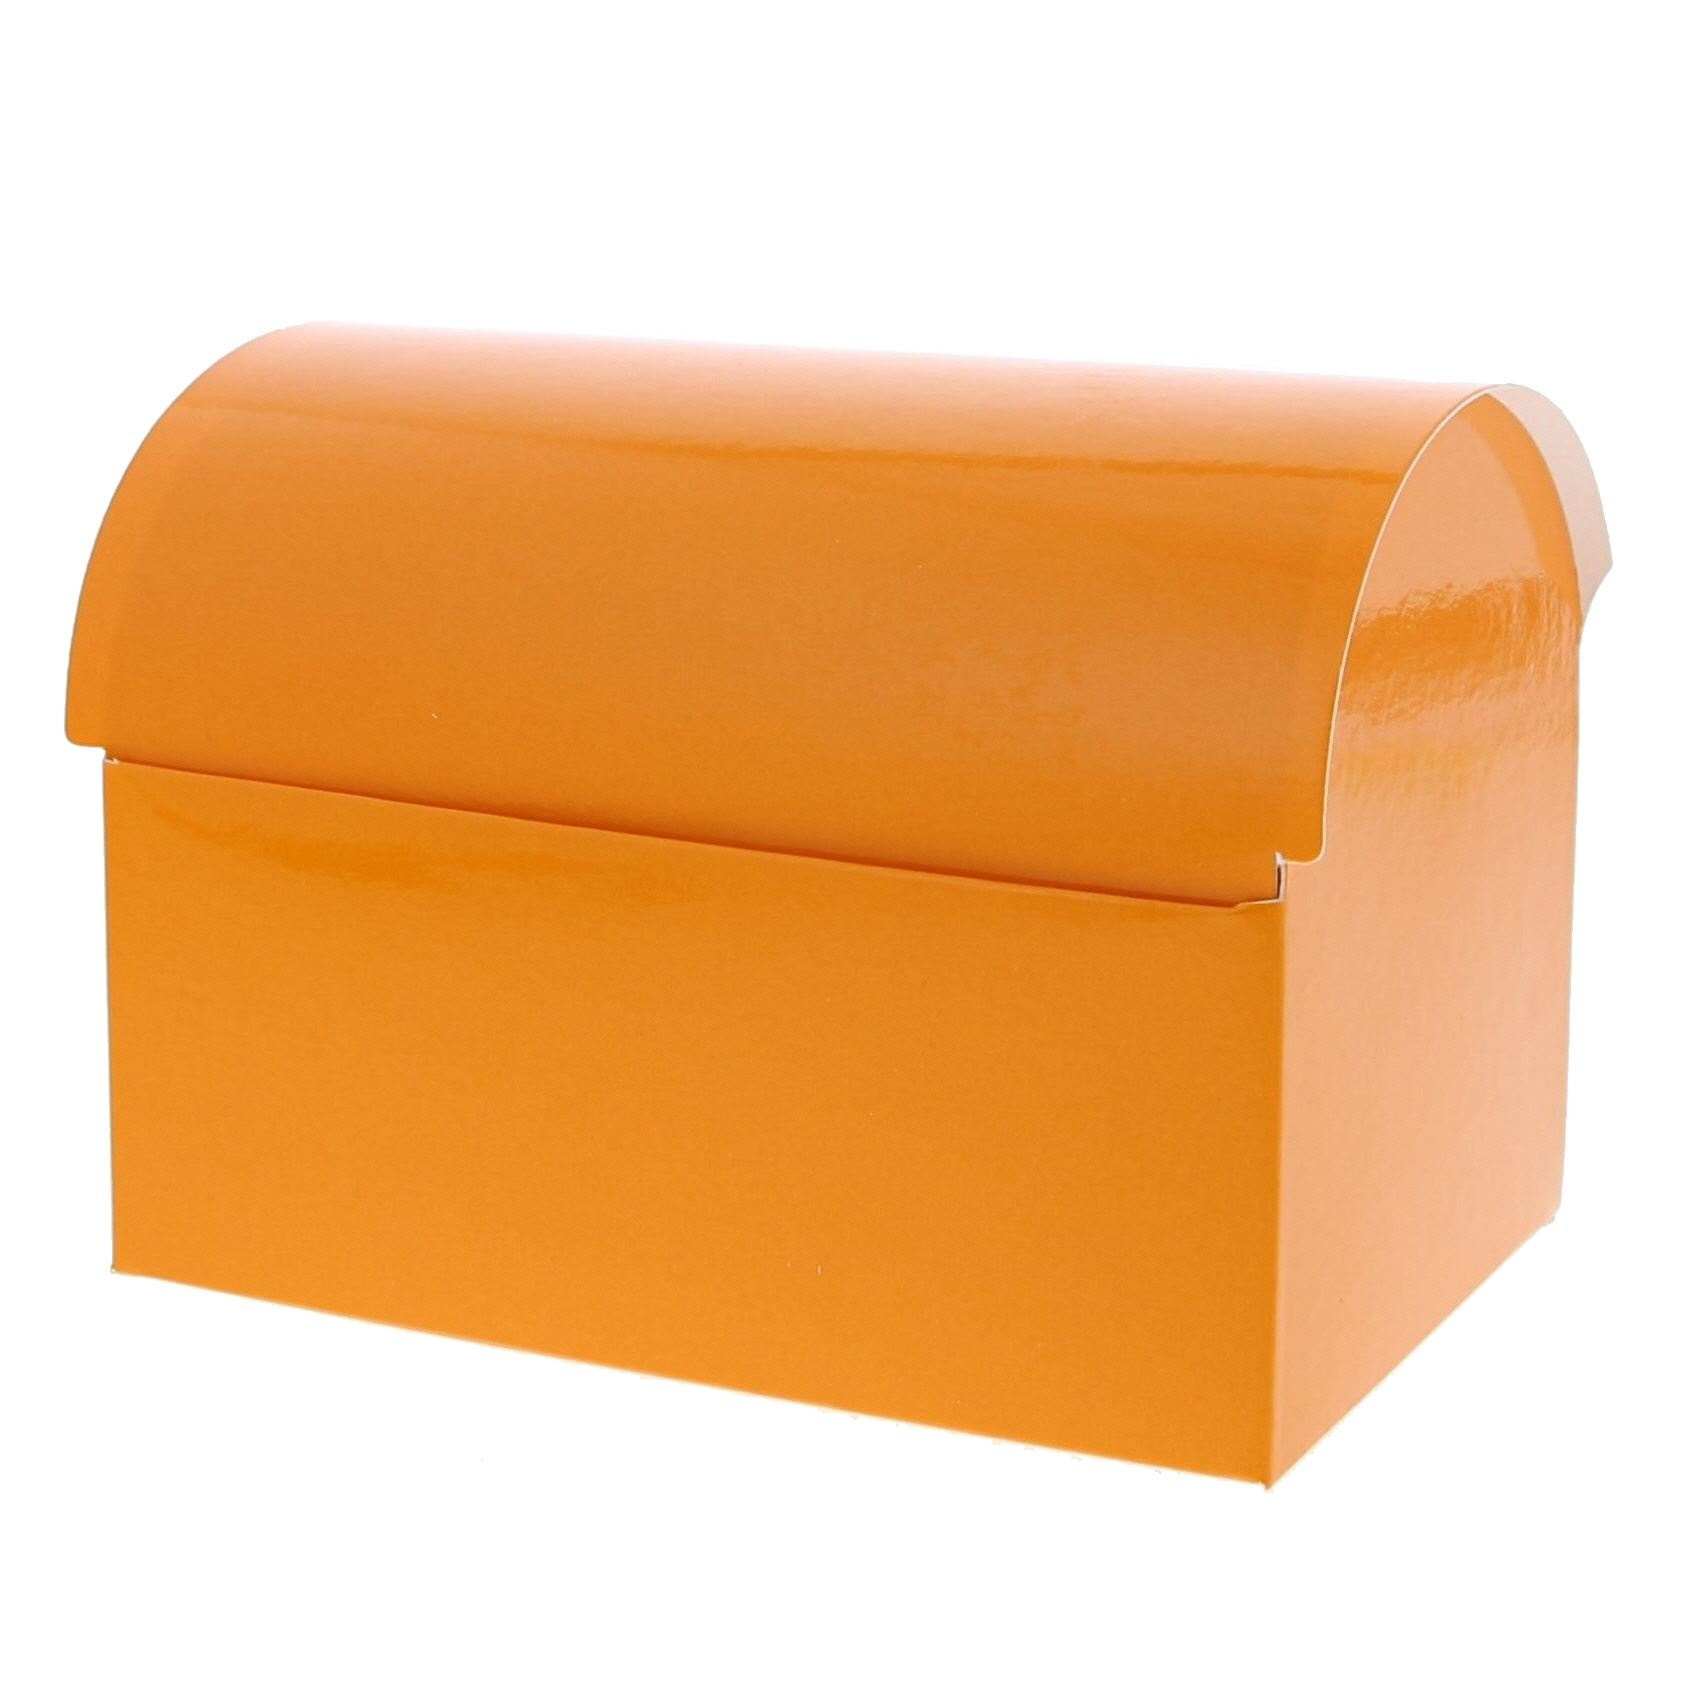 Treasure box - 500 gr. - 25 pieces - Orange